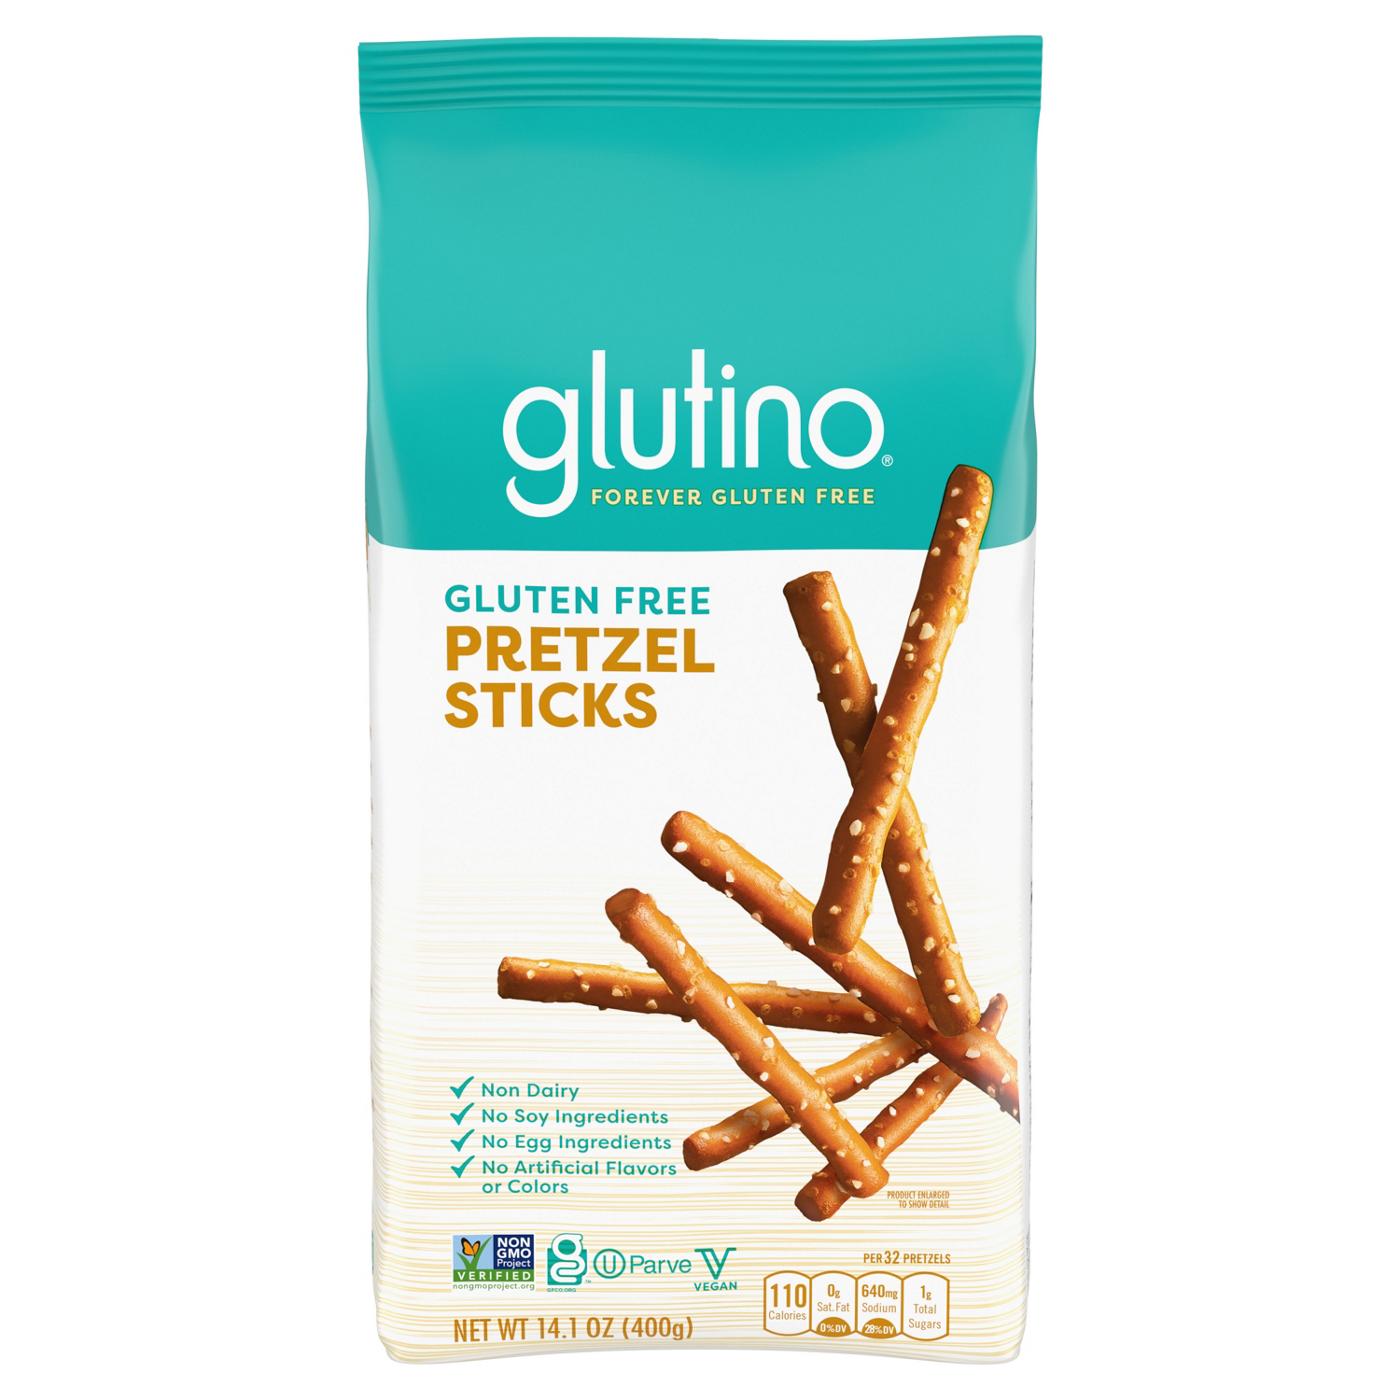 Glutino Gluten Free Pretzel Sticks; image 1 of 7